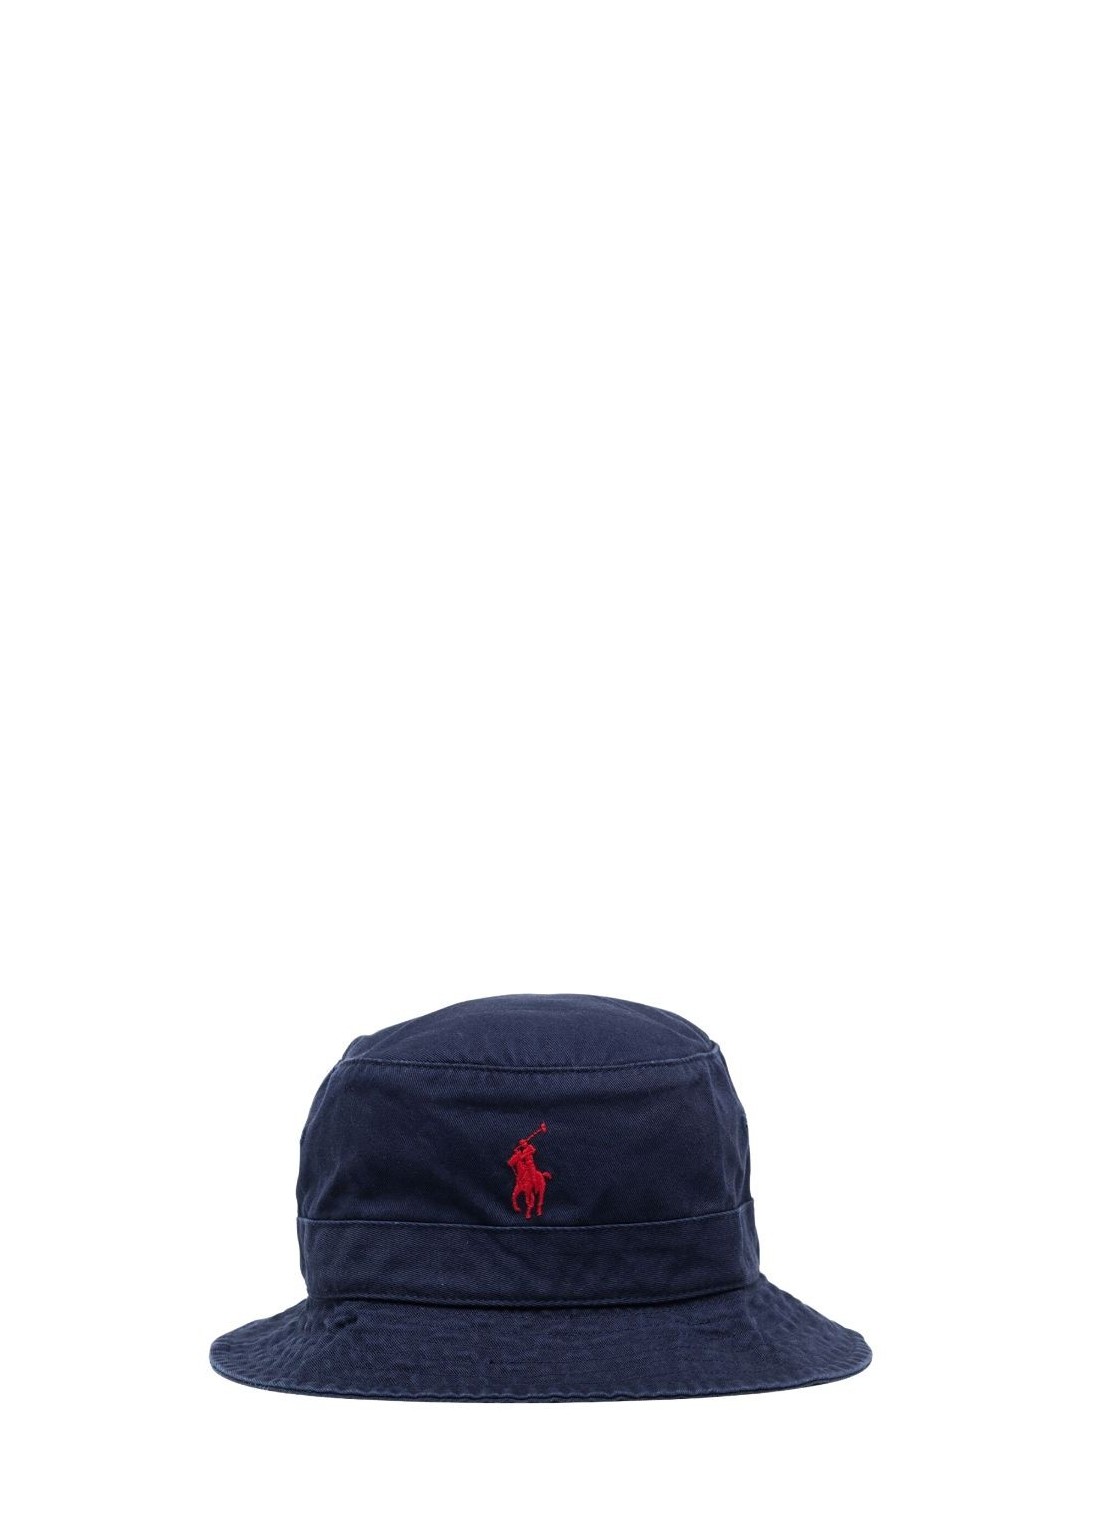 polo ralph lauren cap man loft bucket-hat 710798567005 newport navy Talla  L/XL Color Azul